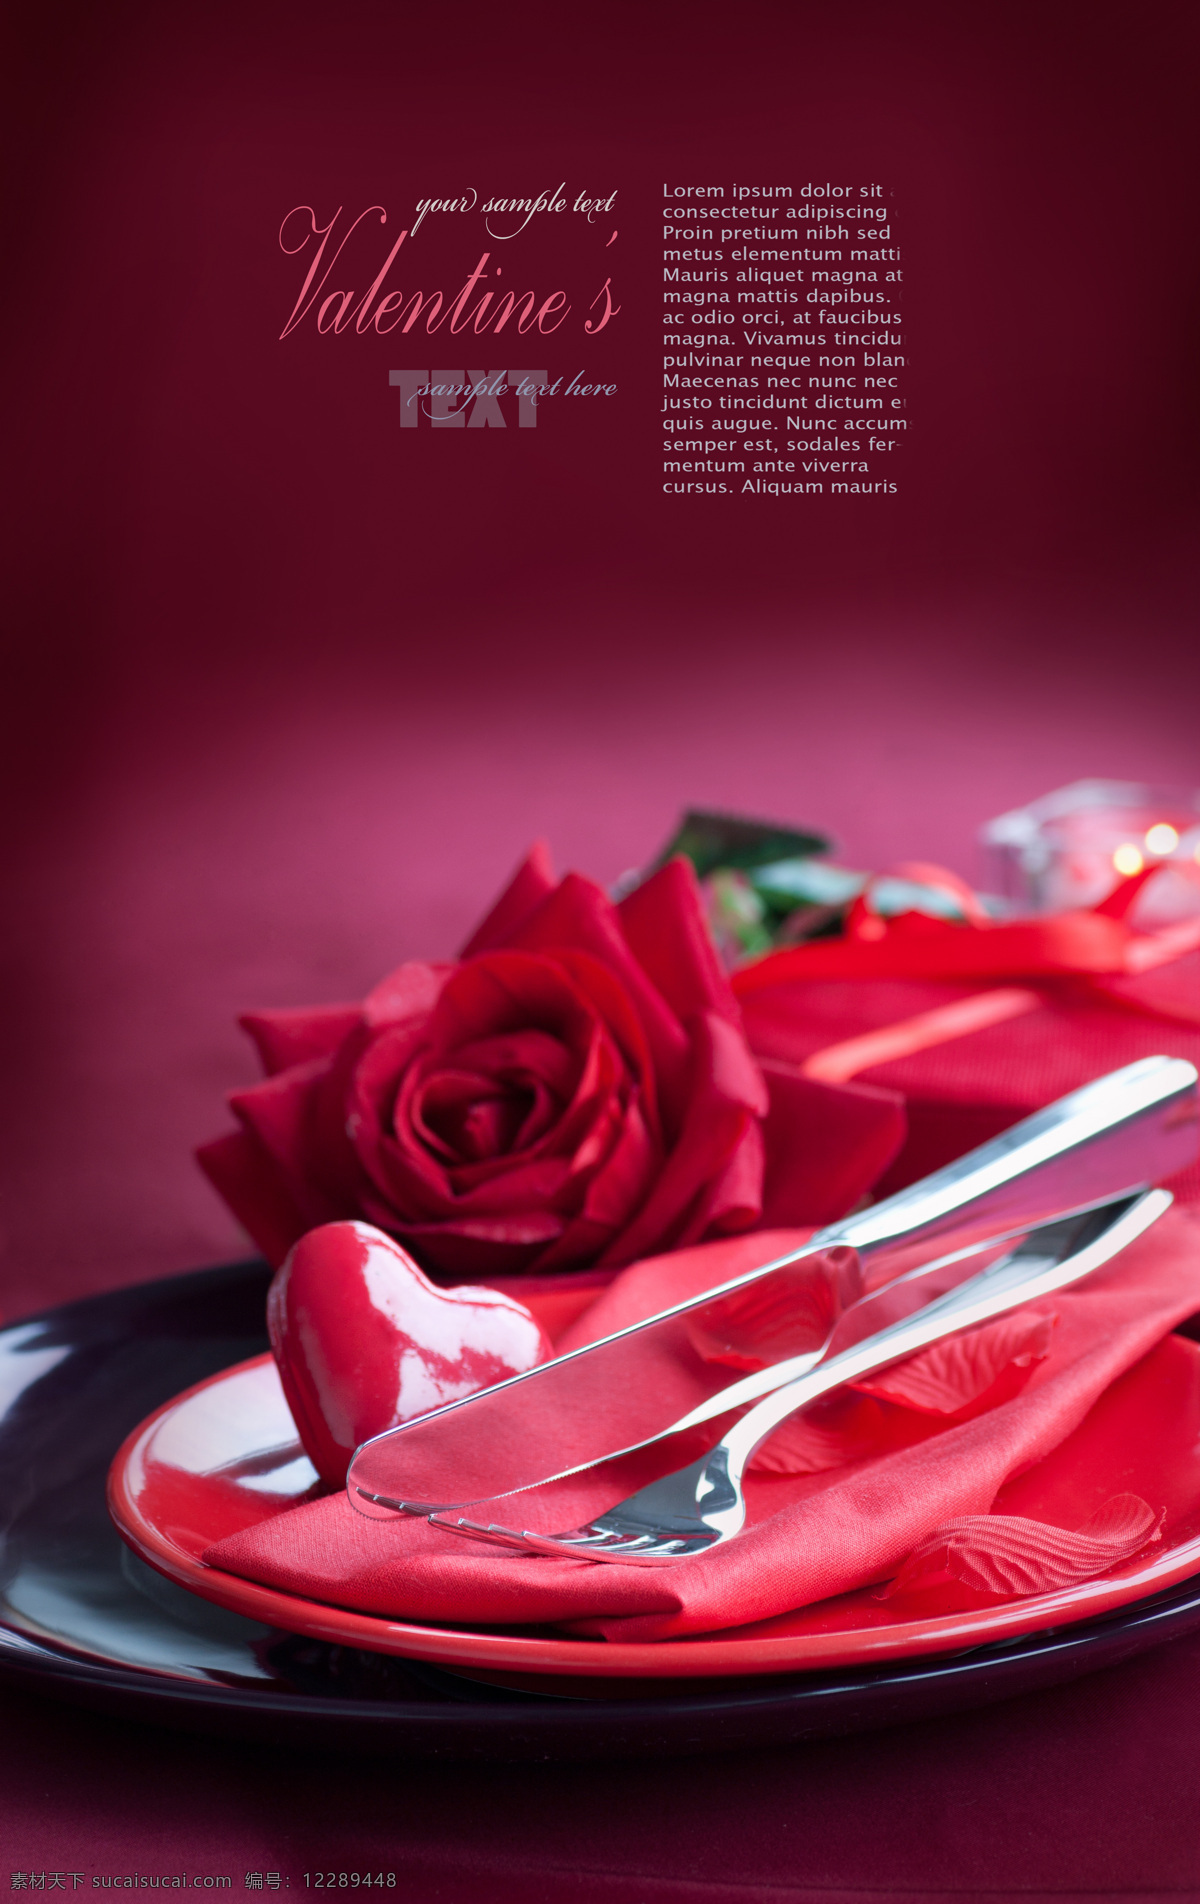 玫瑰花与刀叉 玫瑰花 餐厅 西餐厅 餐具 刀叉 鲜花 花朵 红玫瑰 温馨 浪漫 情人节 酒杯 情人节晚餐 餐具厨具 餐饮美食 红色